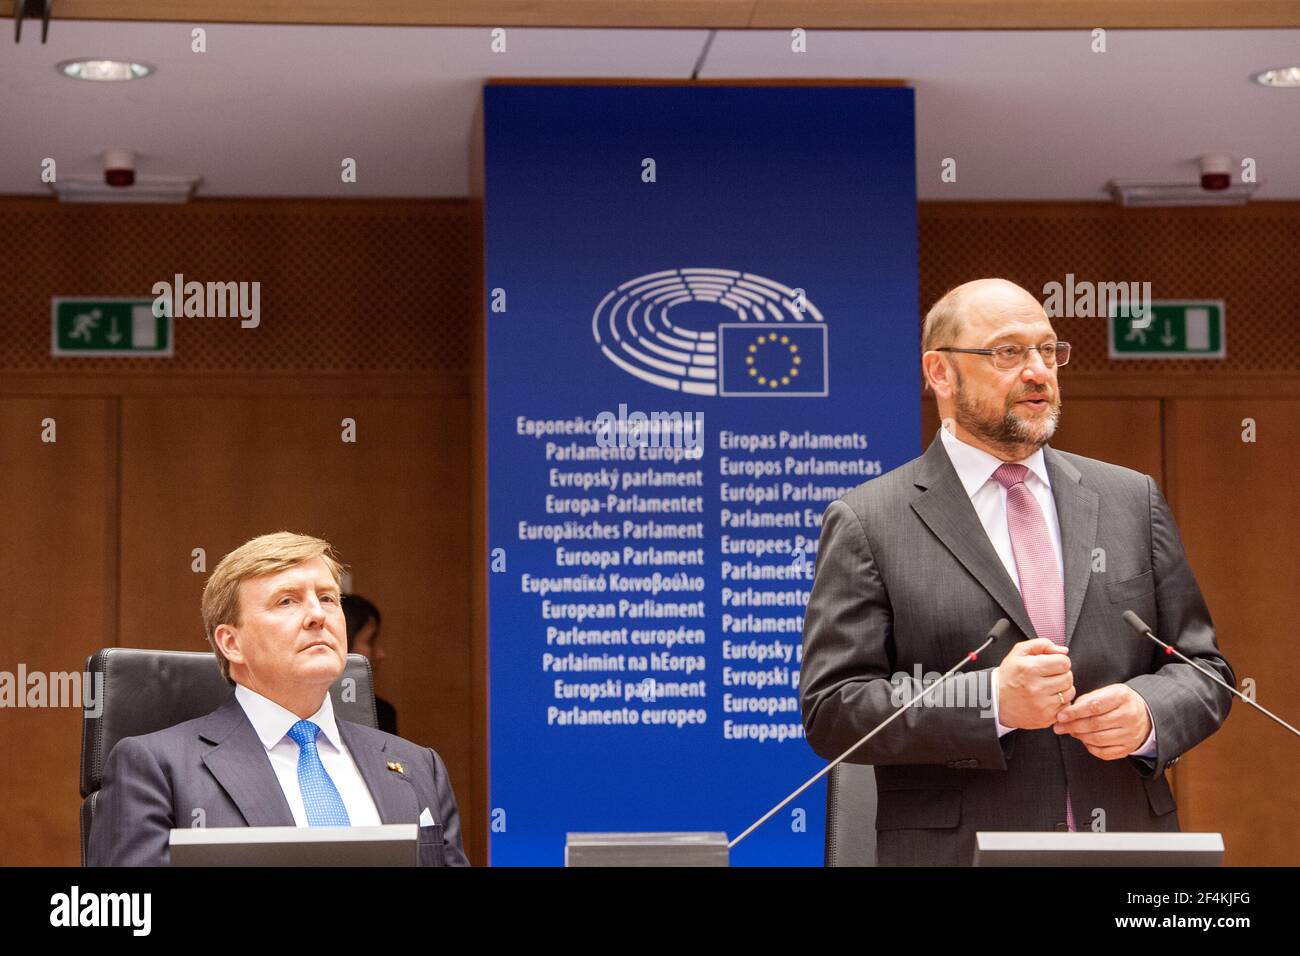 Bruxelles, Belgique. Le roi hollandais Willem-Alexander est reçu par M. Shultz, président du Parlement européen. Banque D'Images